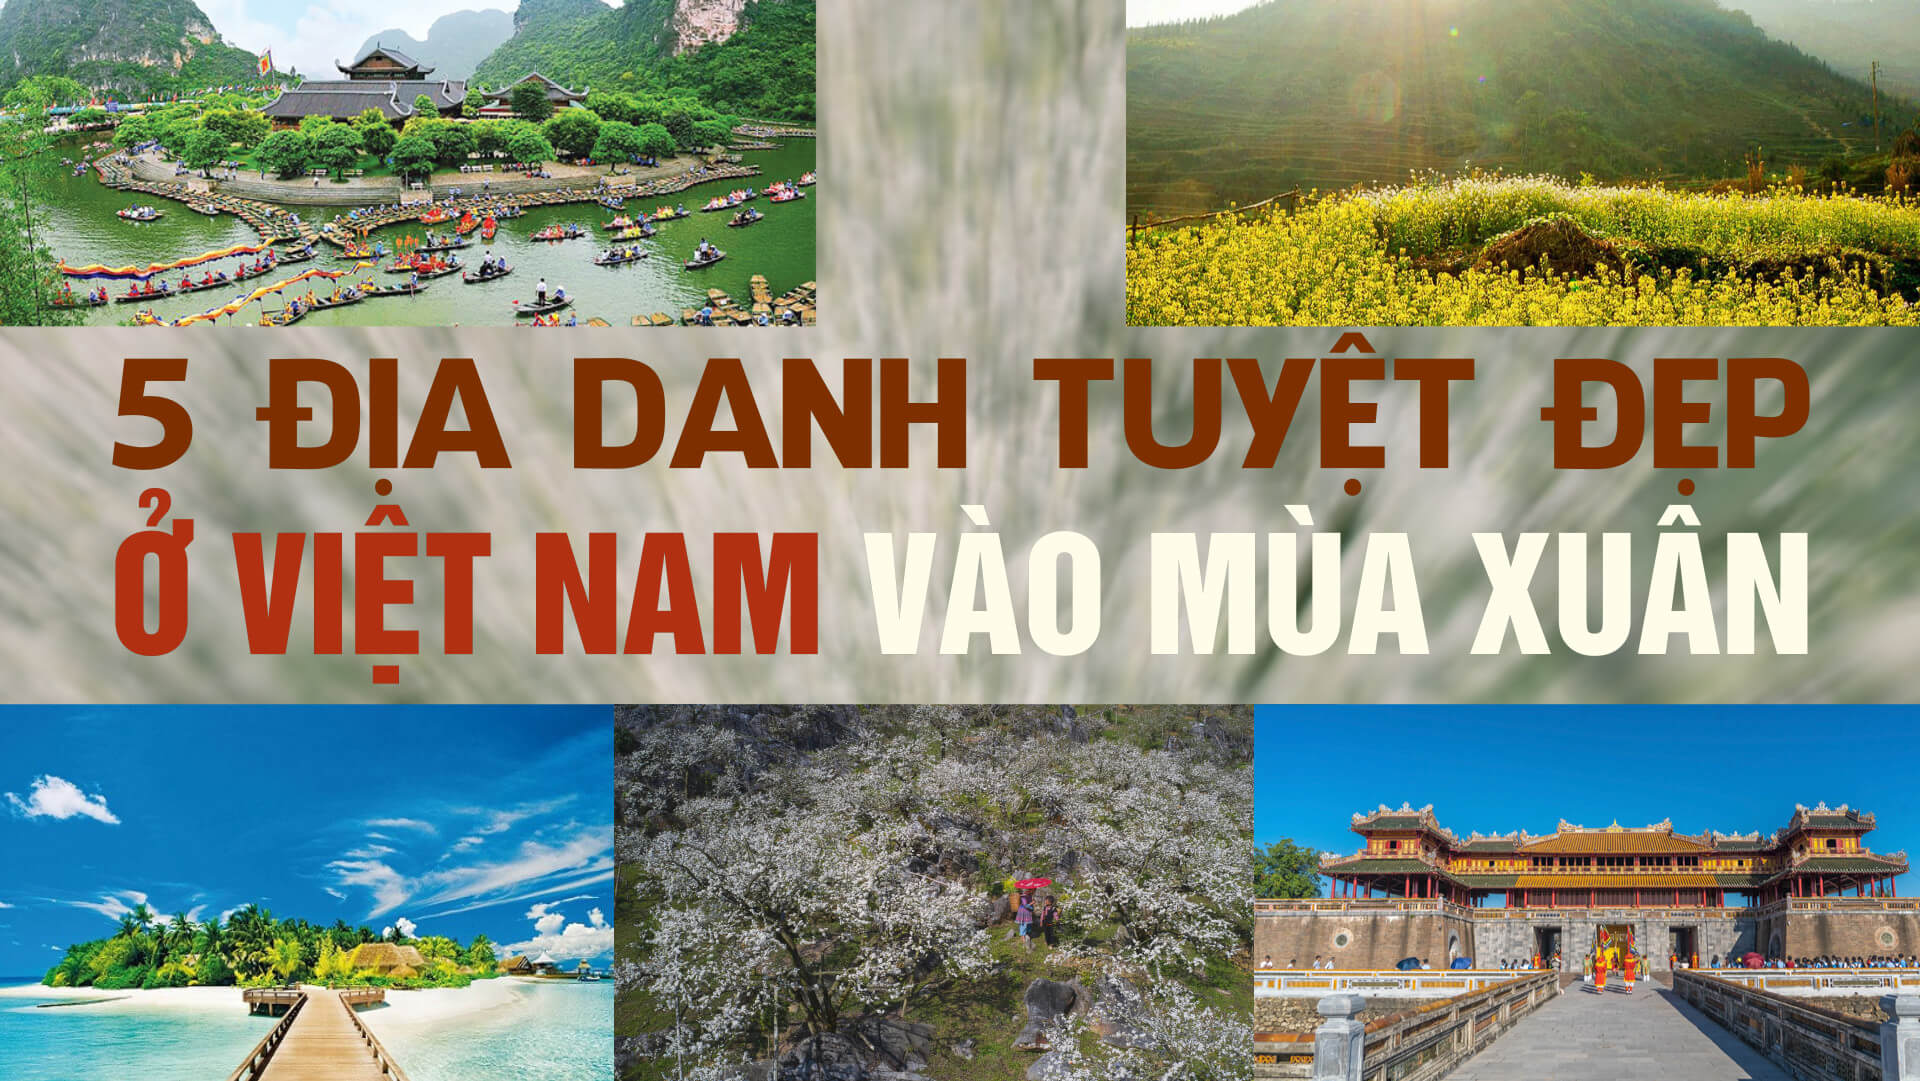 5 địa danh tuyệt đẹp ở Việt Nam vào mùa xuân không thể bỏ lỡ!